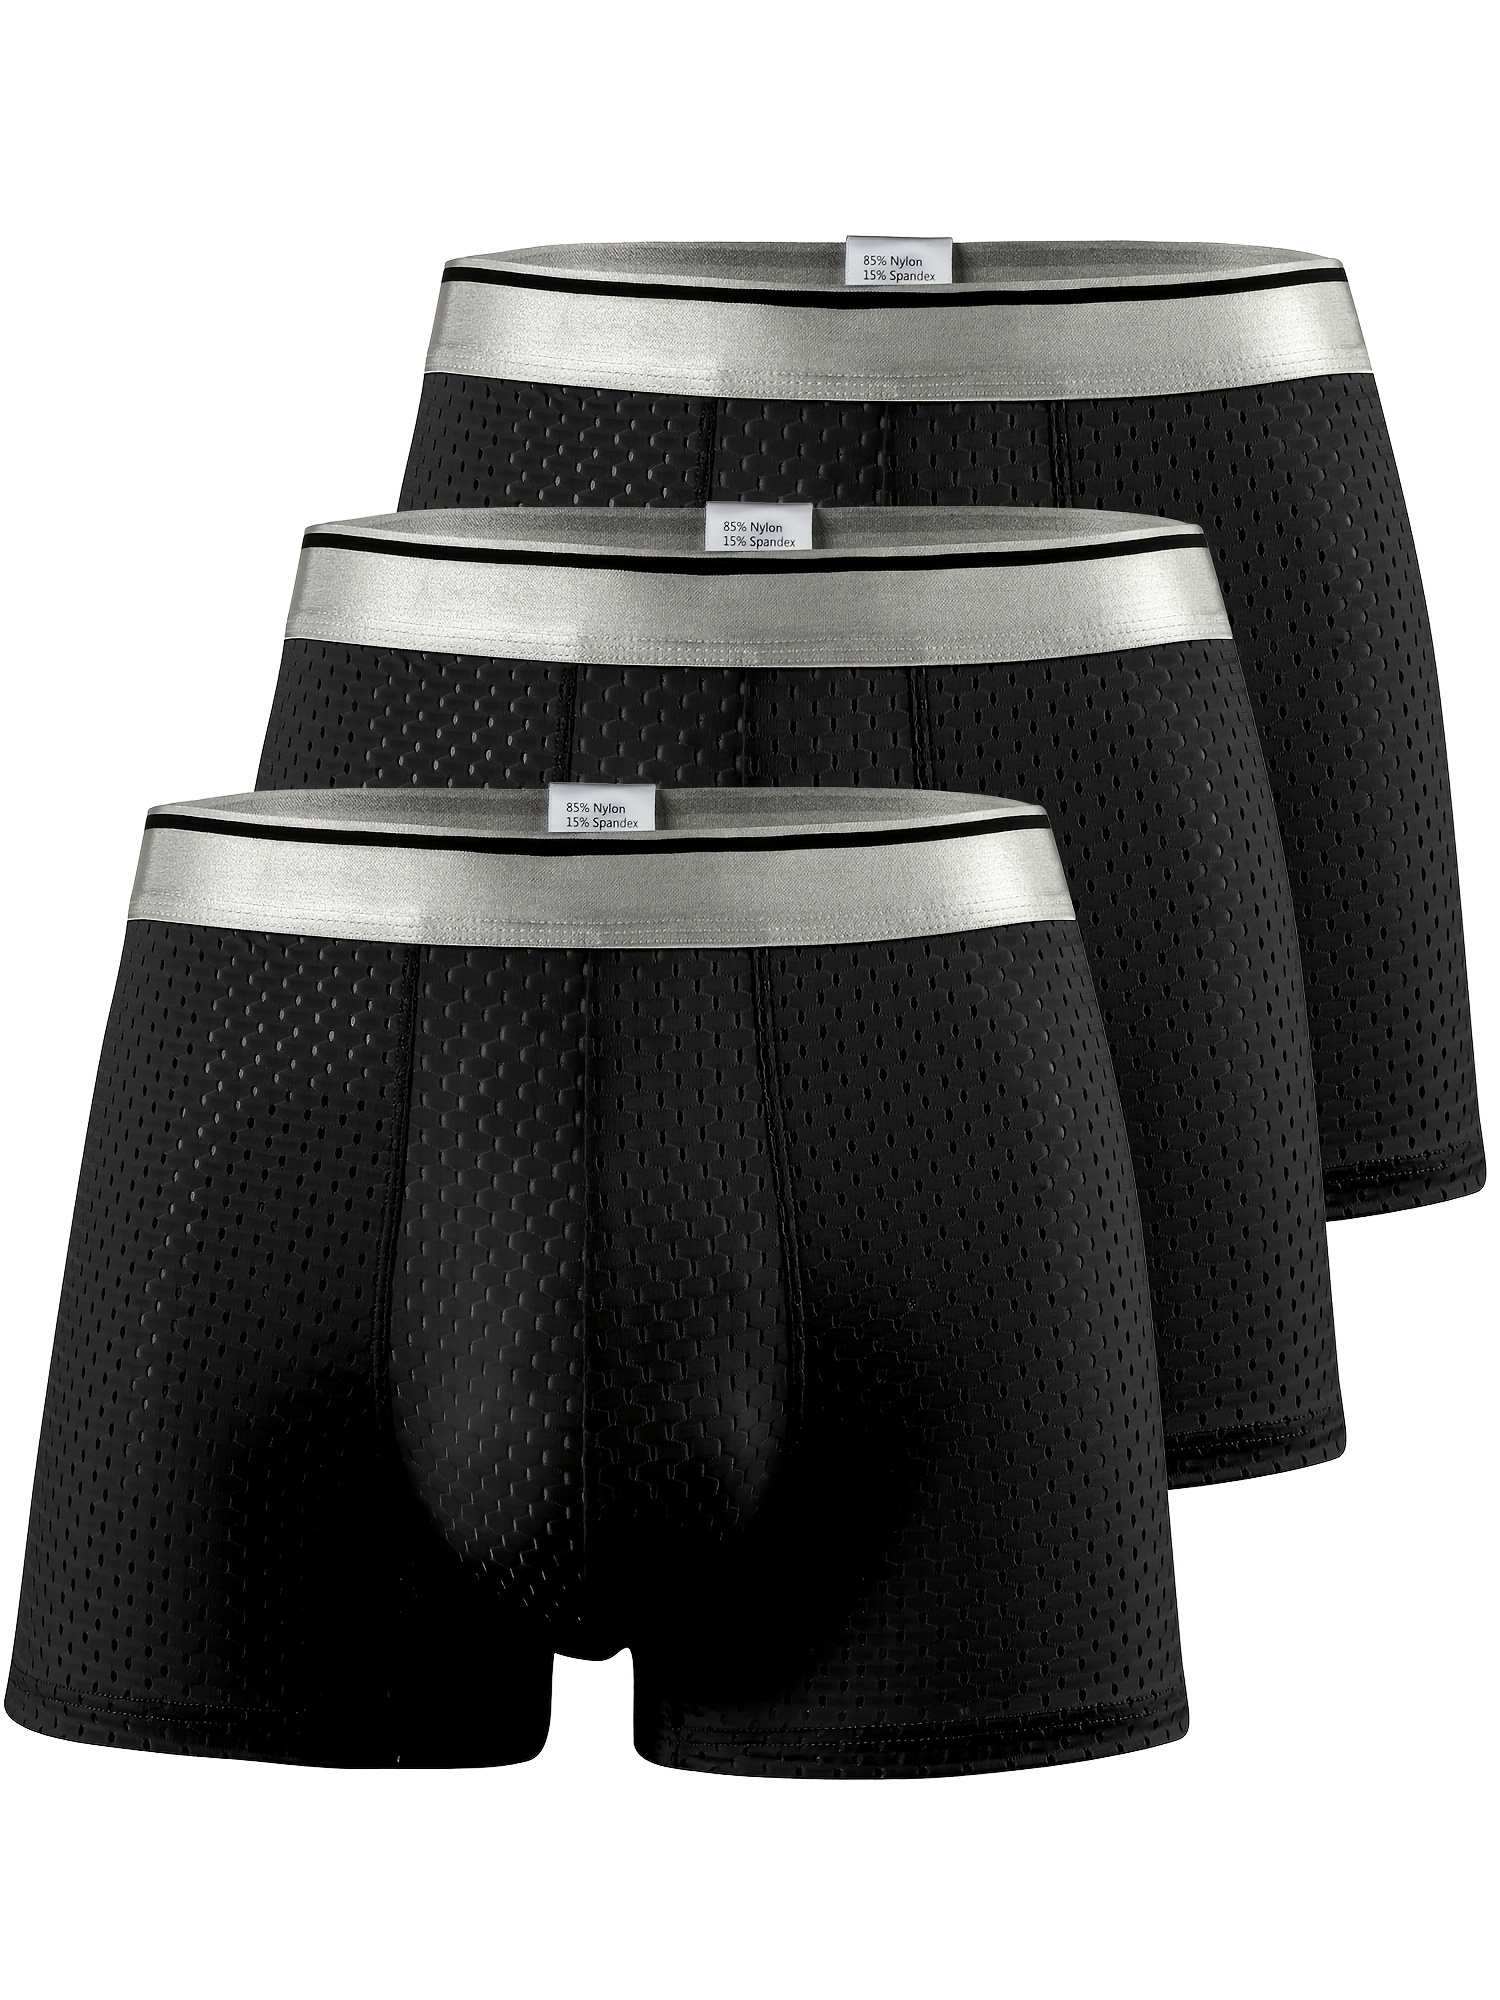 3pcs Men's Mesh Breathable Quick Drying Boxer Briefs Underwear